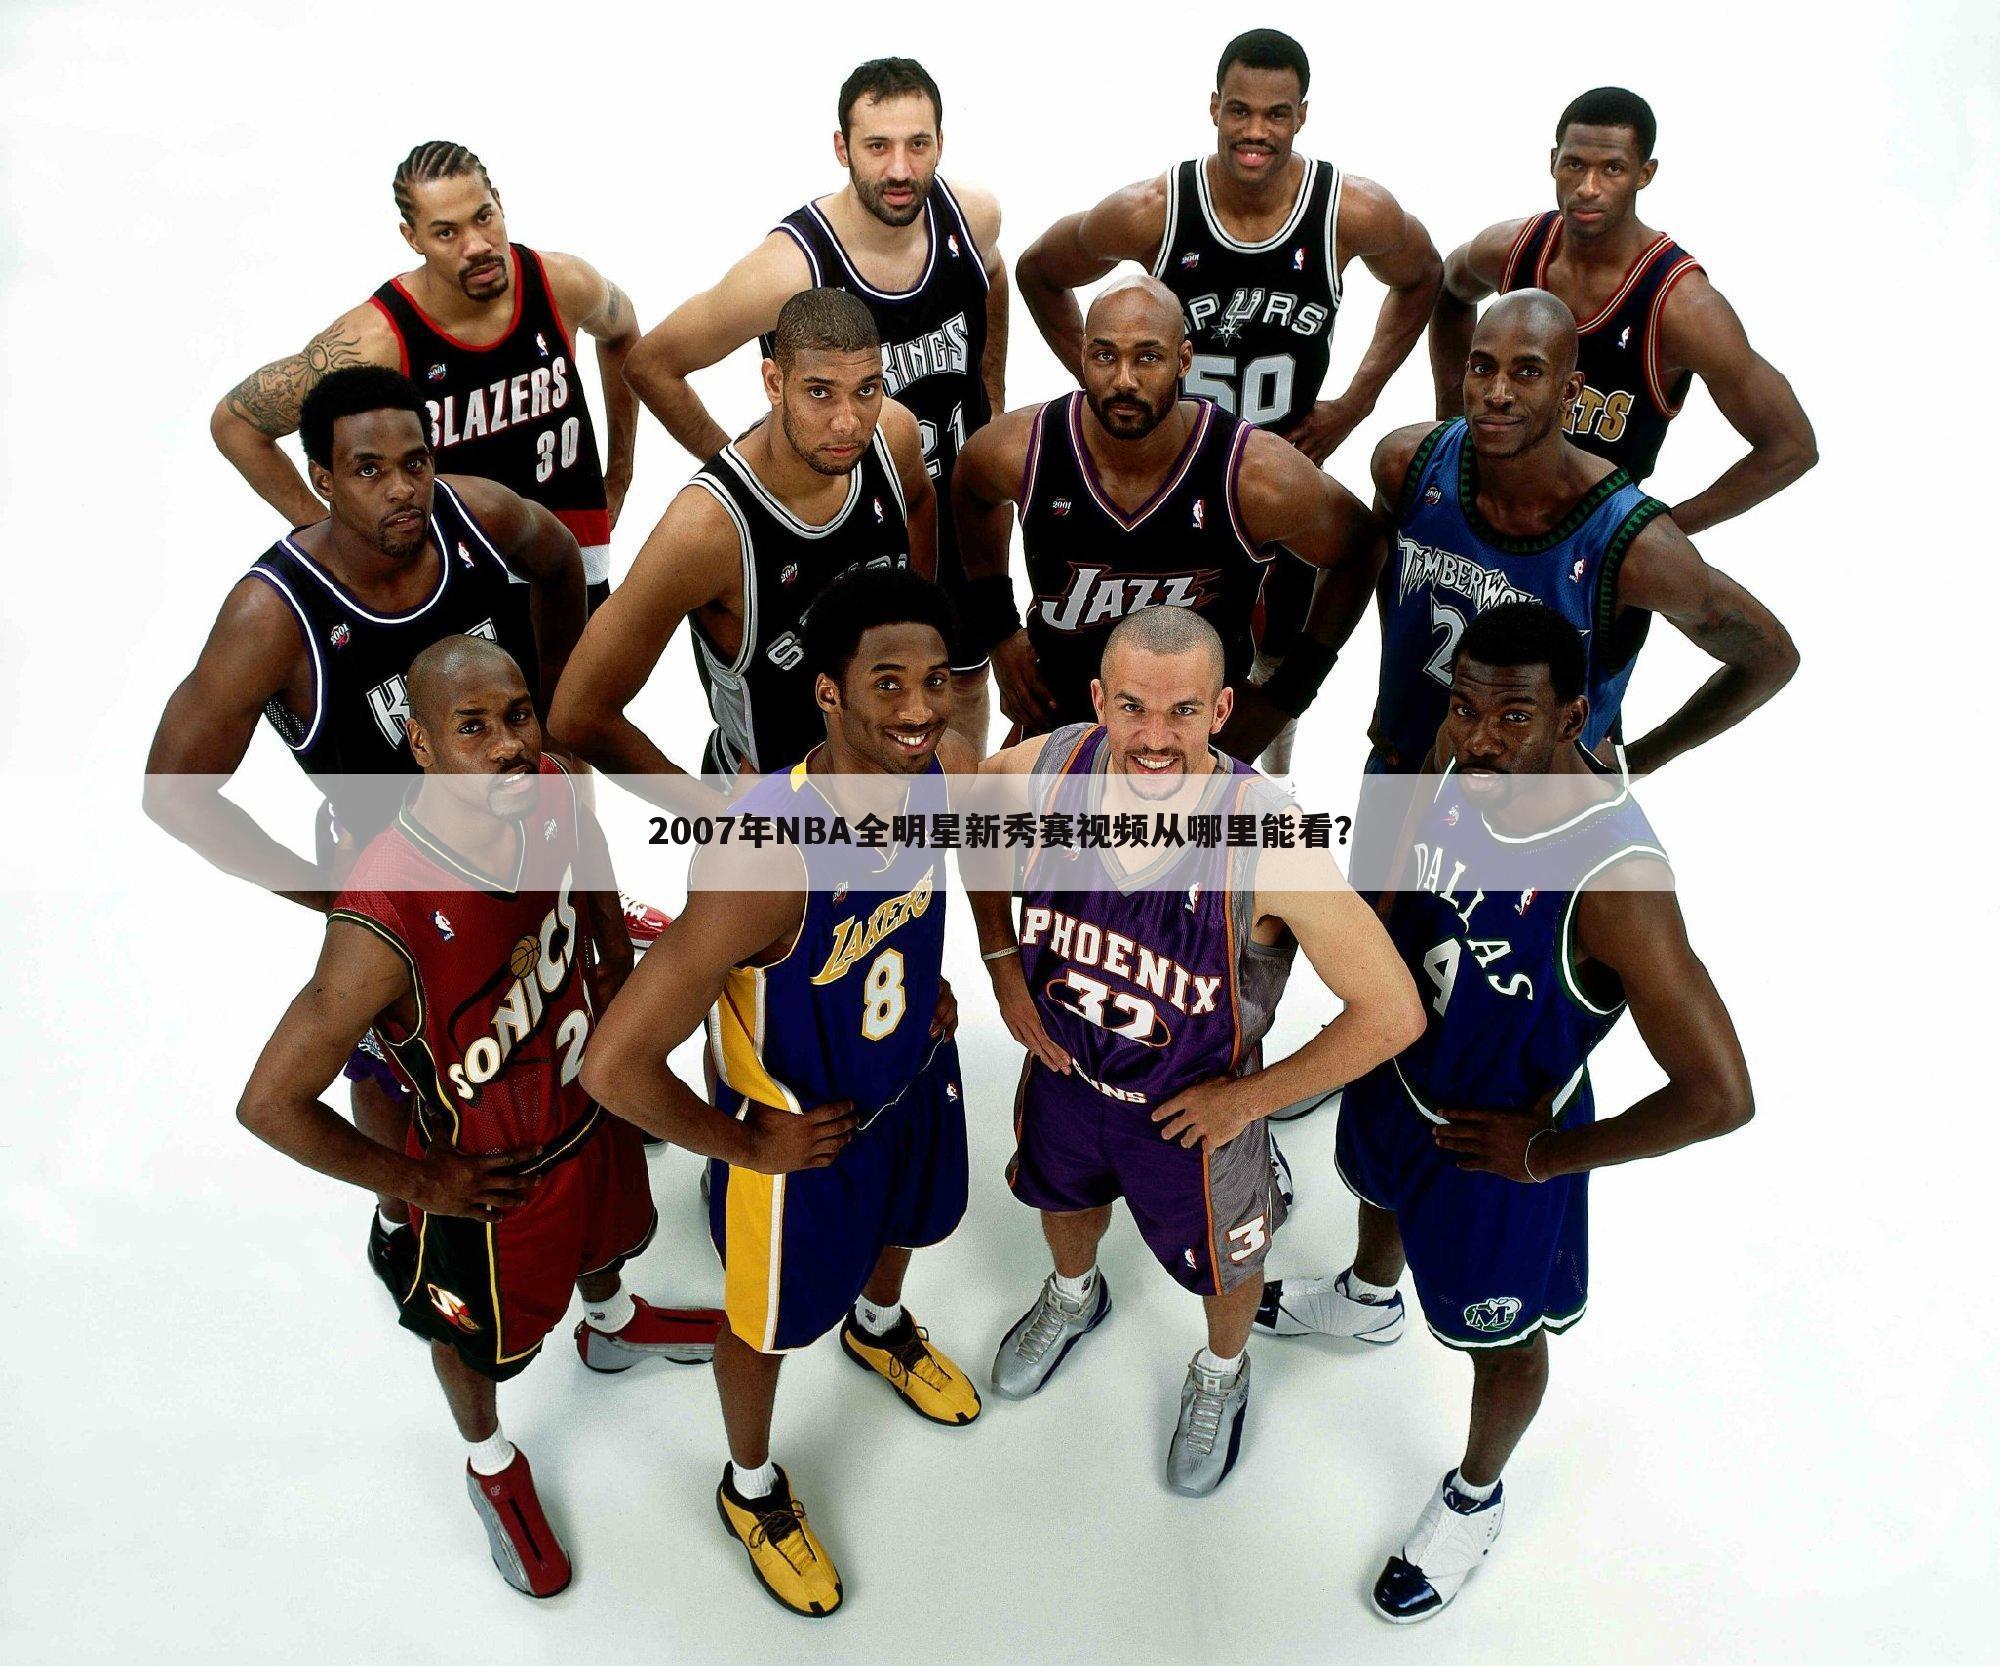 2007年NBA全明星新秀赛视频从哪里能看？